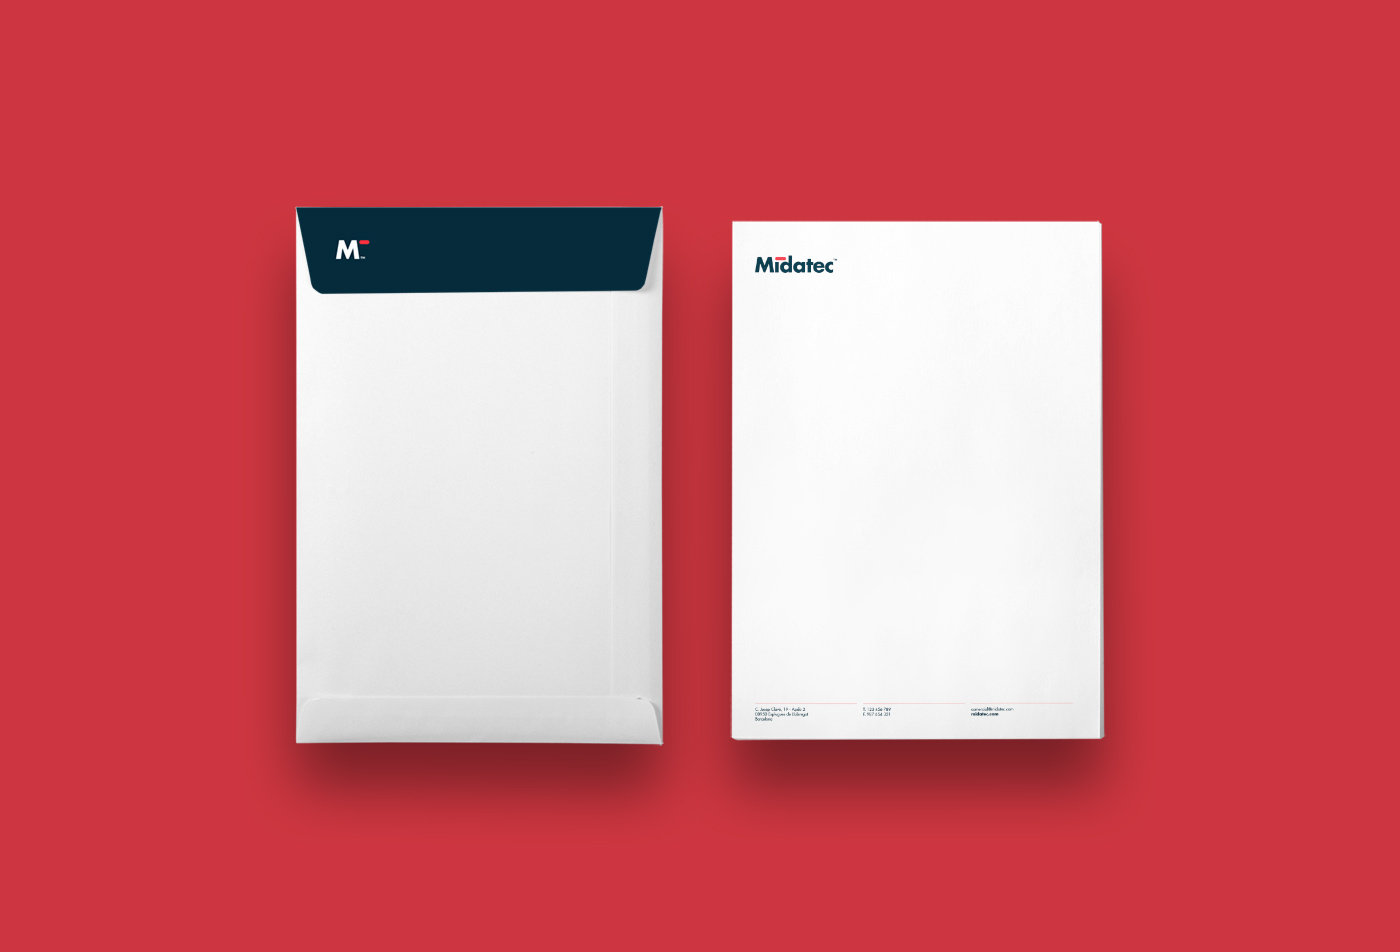 Diseño de identidad corporativa para empresa tecnológica - Diseño de papelería corporativa Midatec - Estudio de diseño Valencia Pixelarte